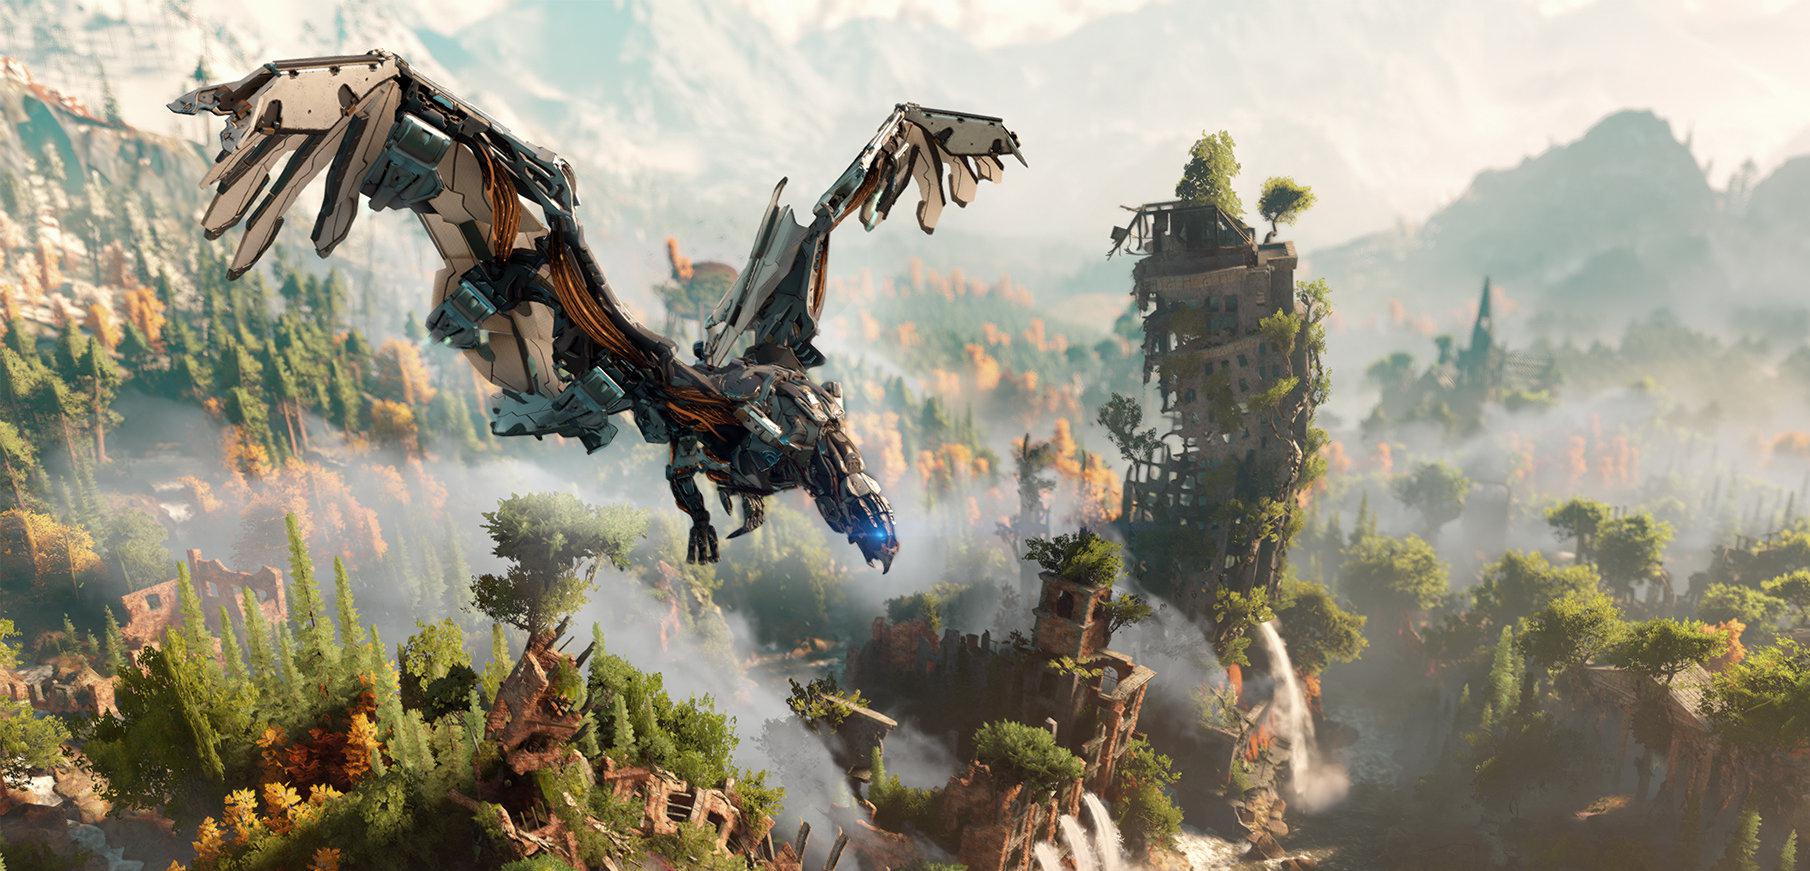 Polowanie na mechaniczne dinozaury trwa - gameplay z Horizon: Zero Dawn